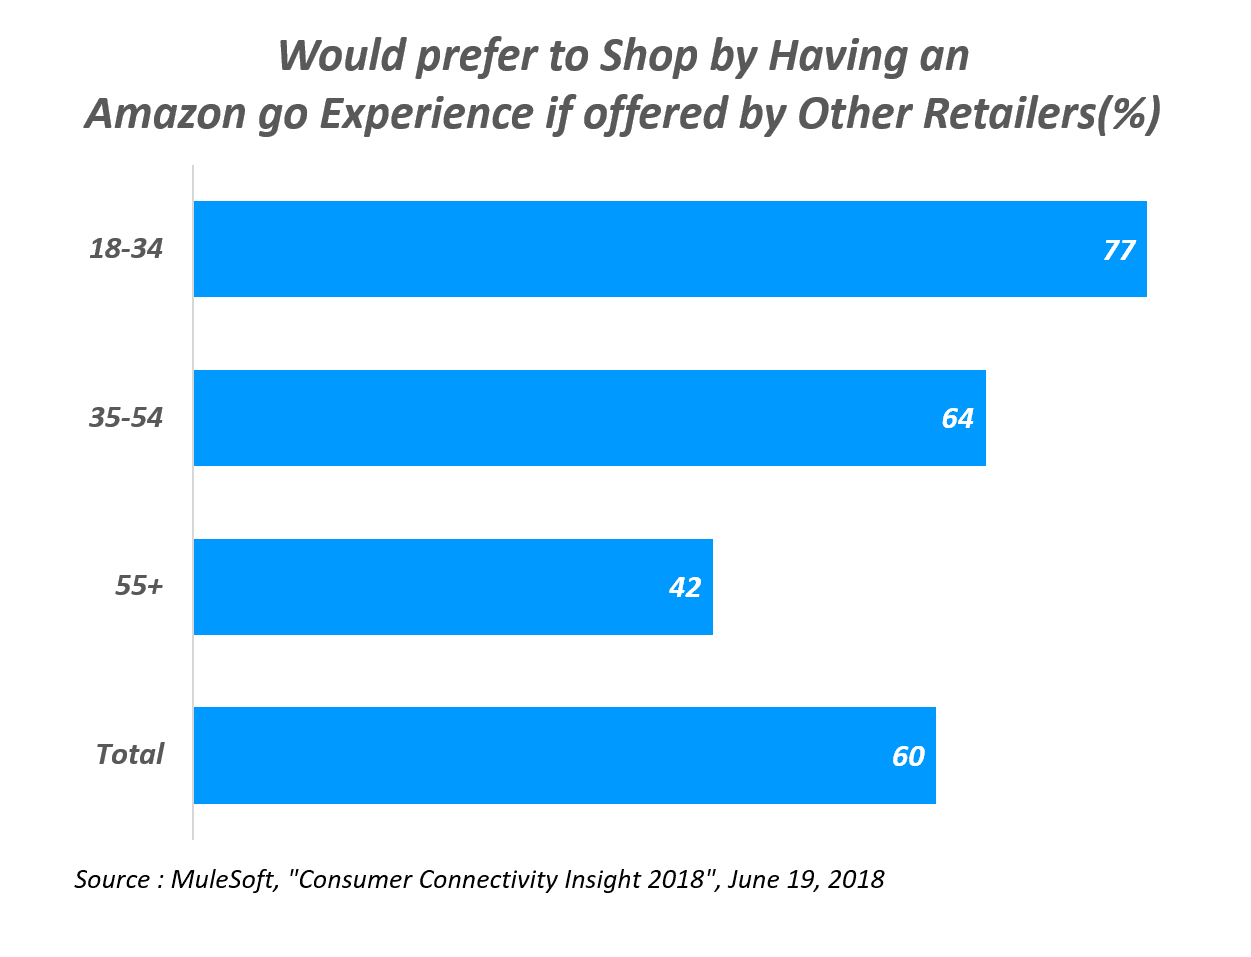 아마존고와 같은 쇼핑 경험을 제공하는 다른 유통에서 쇼핑을 더 선호하는가, Would prefer to Shop by Having an Amazon go Experience if offered by Other Retailers(%)